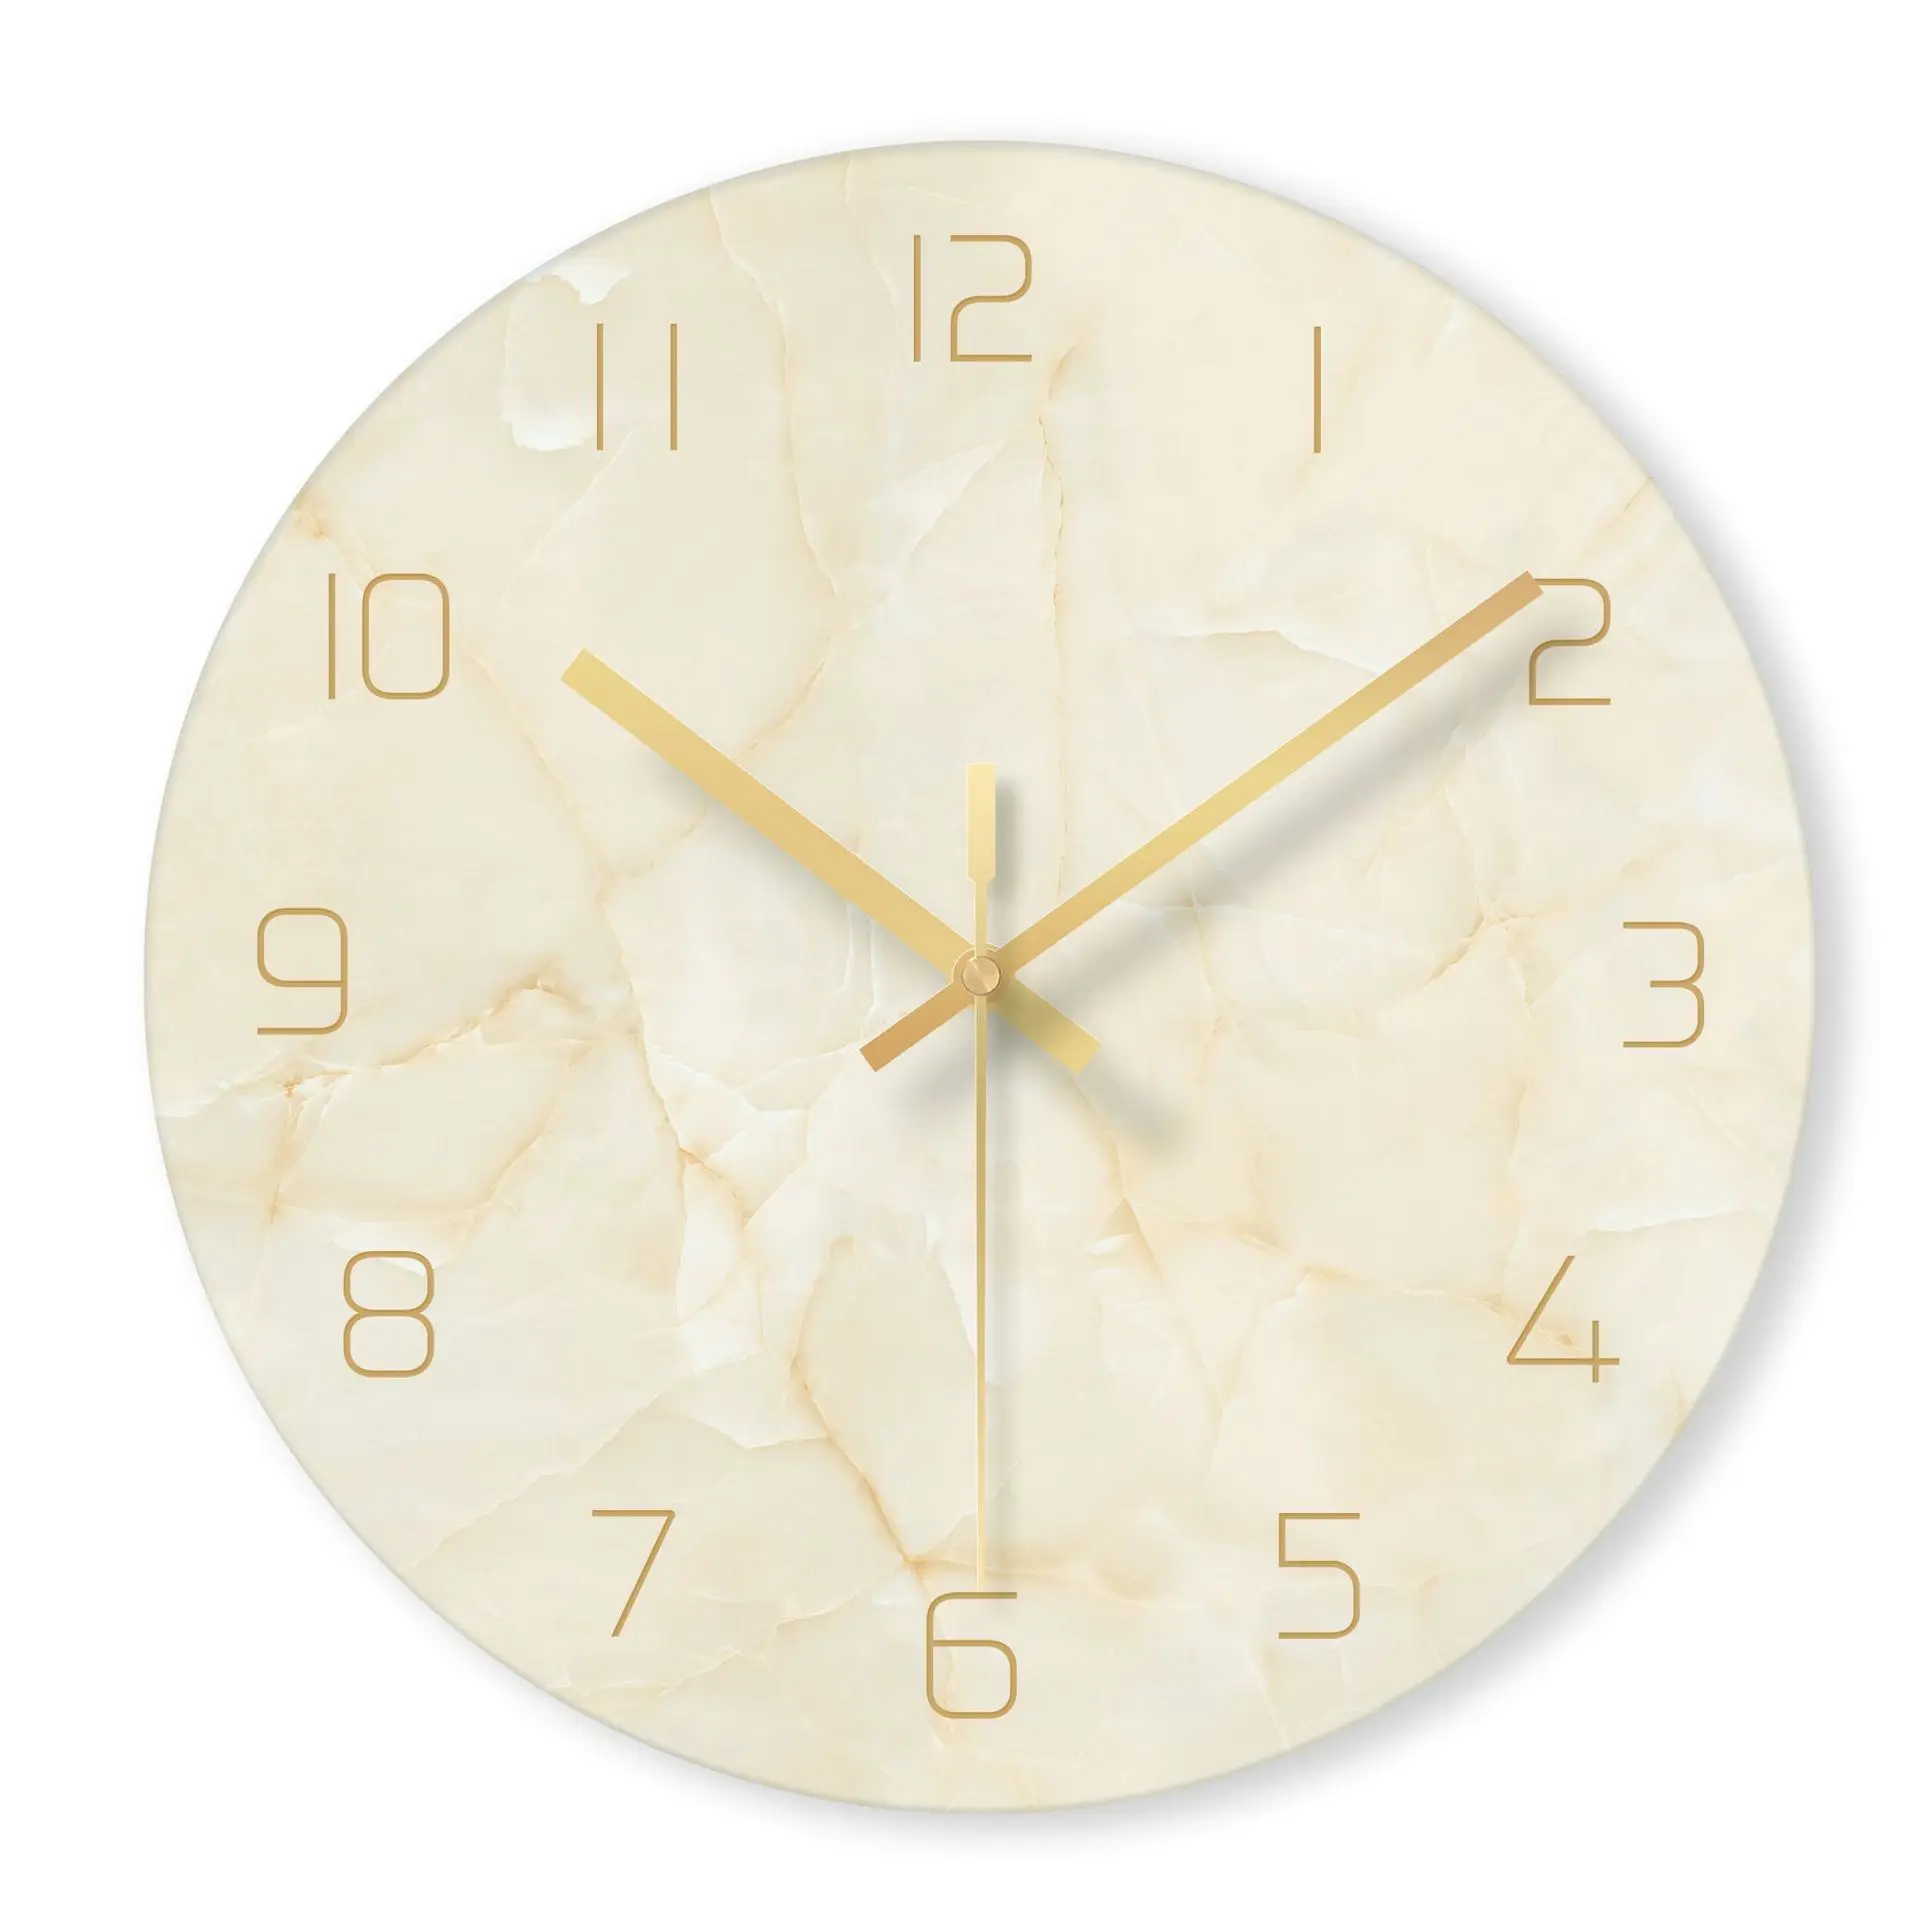 Креативные скандинавские абстрактные настенные часы мраморная текстура стеклянные часы для дома, офиса, школы украшения забавные подарки дропшиппинг